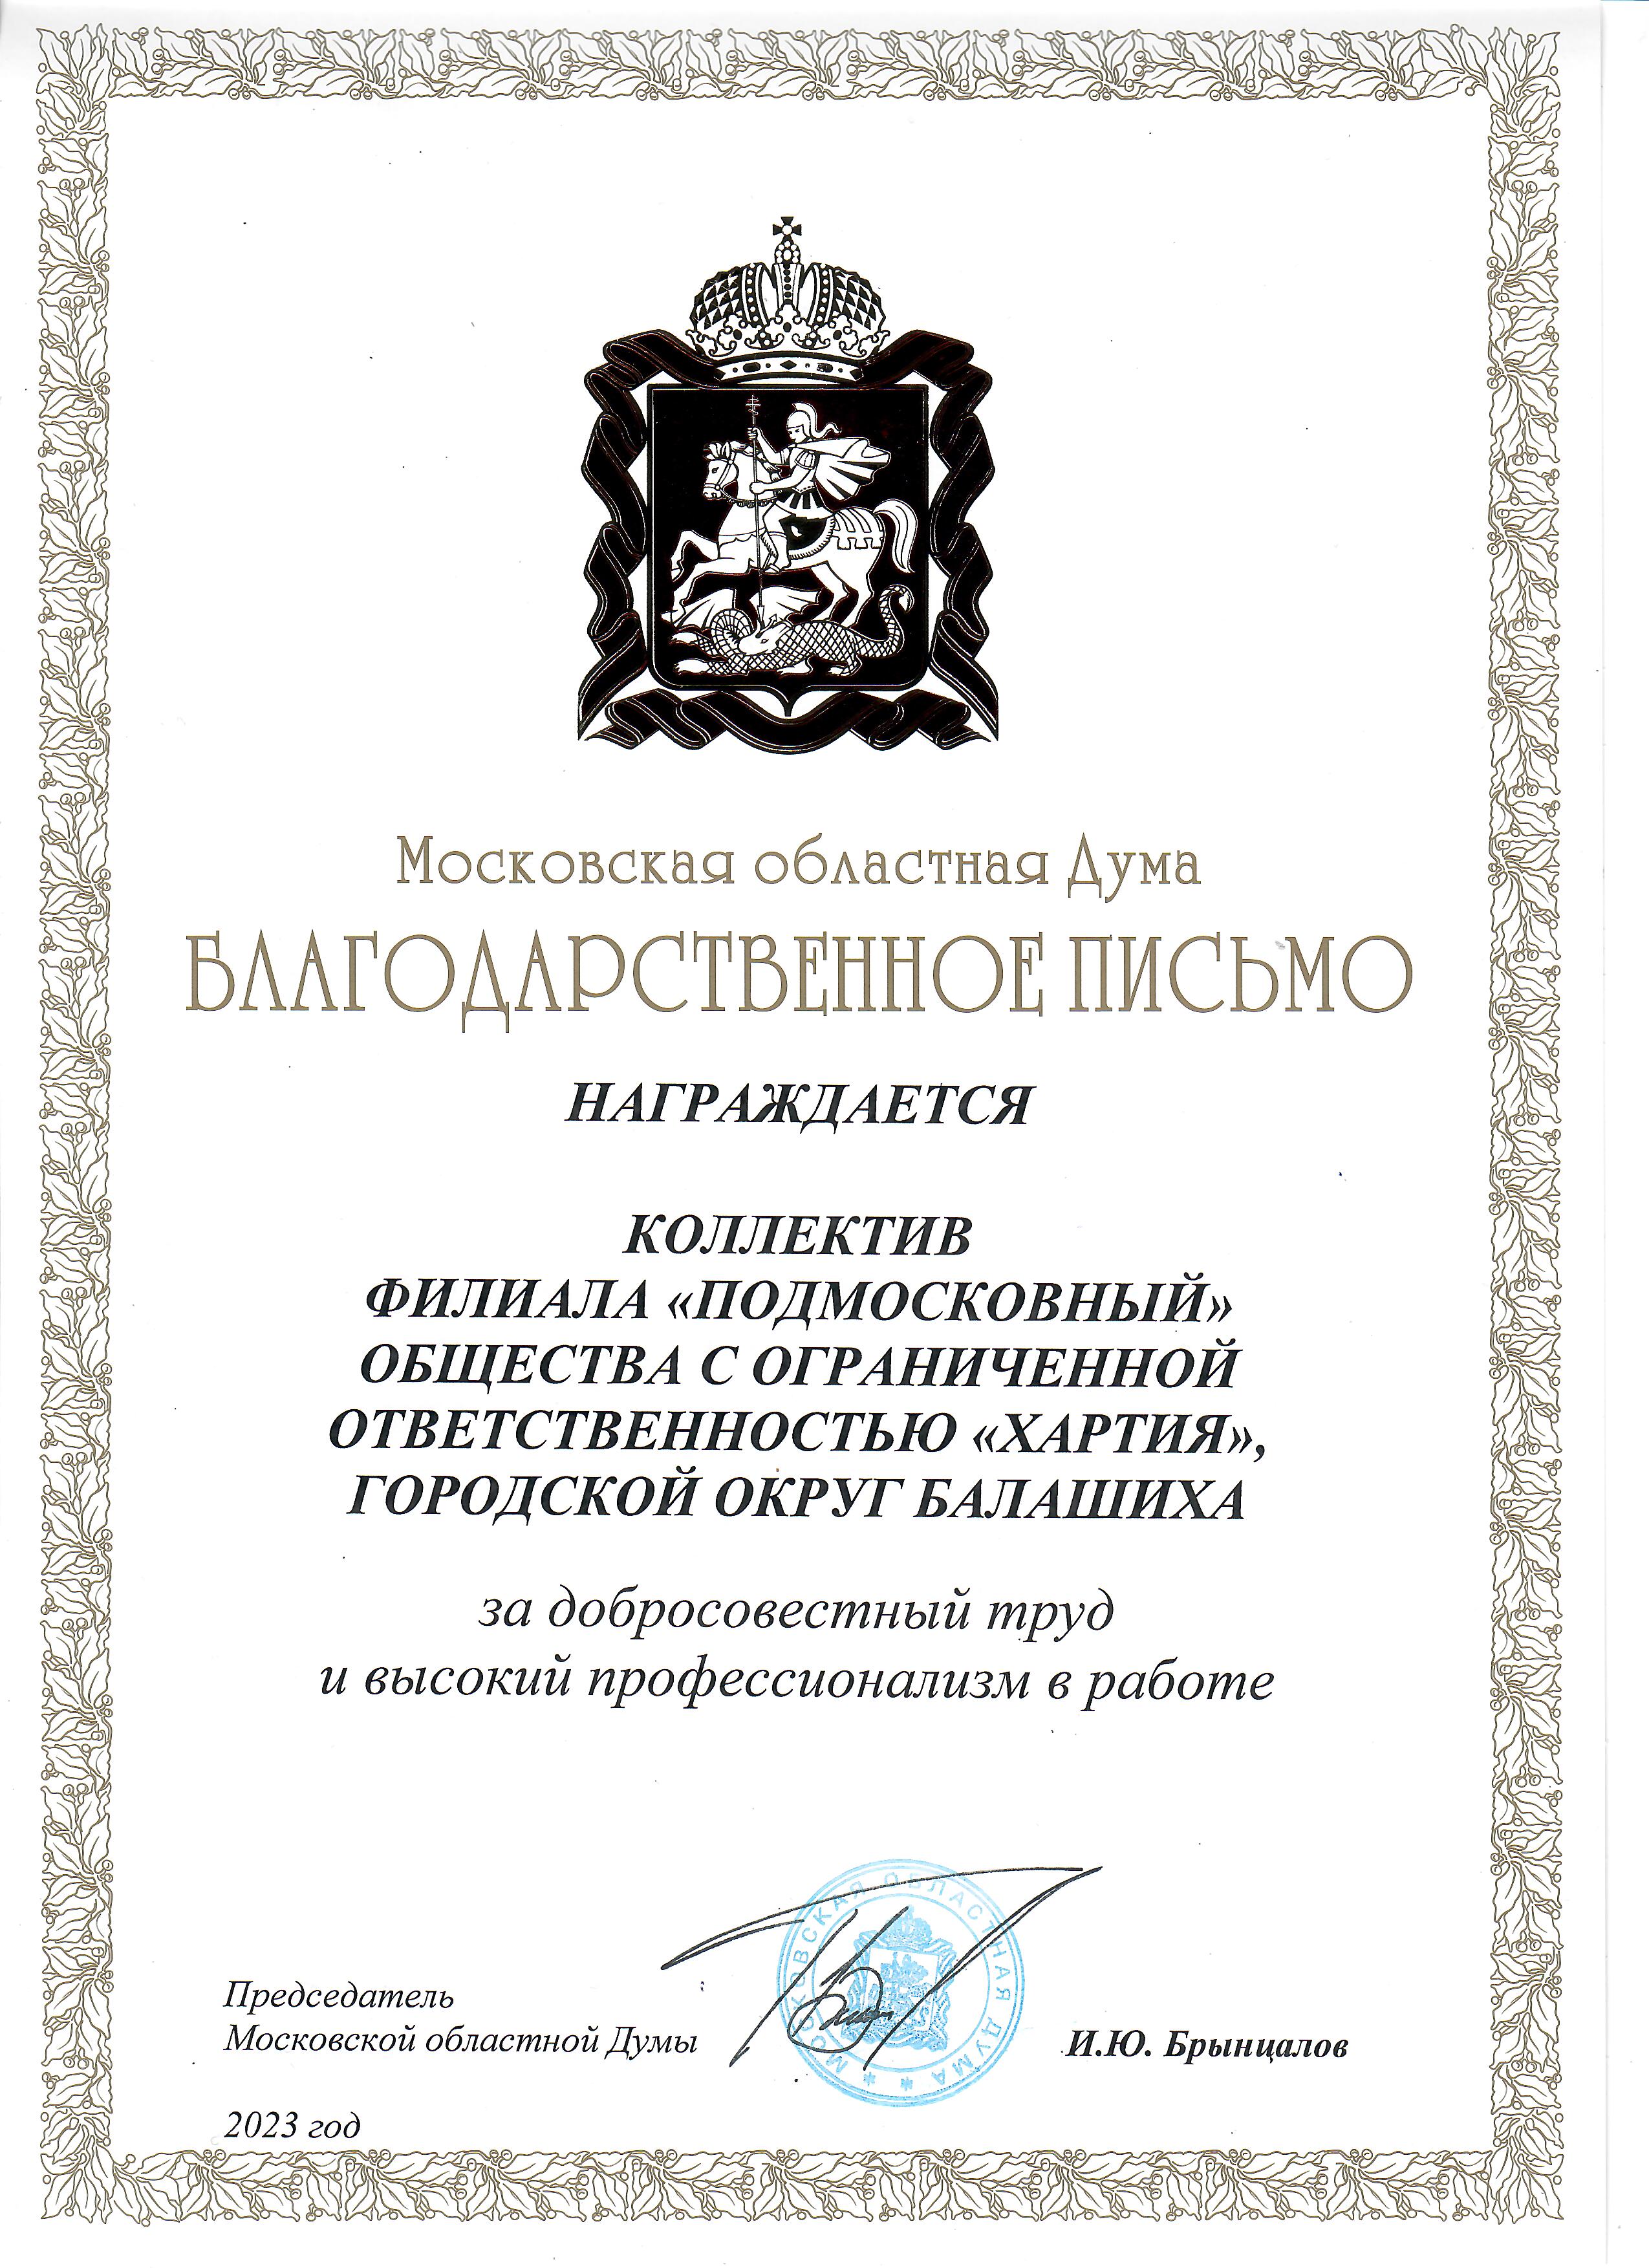 Благодарственное письмо от Московской областной Думы